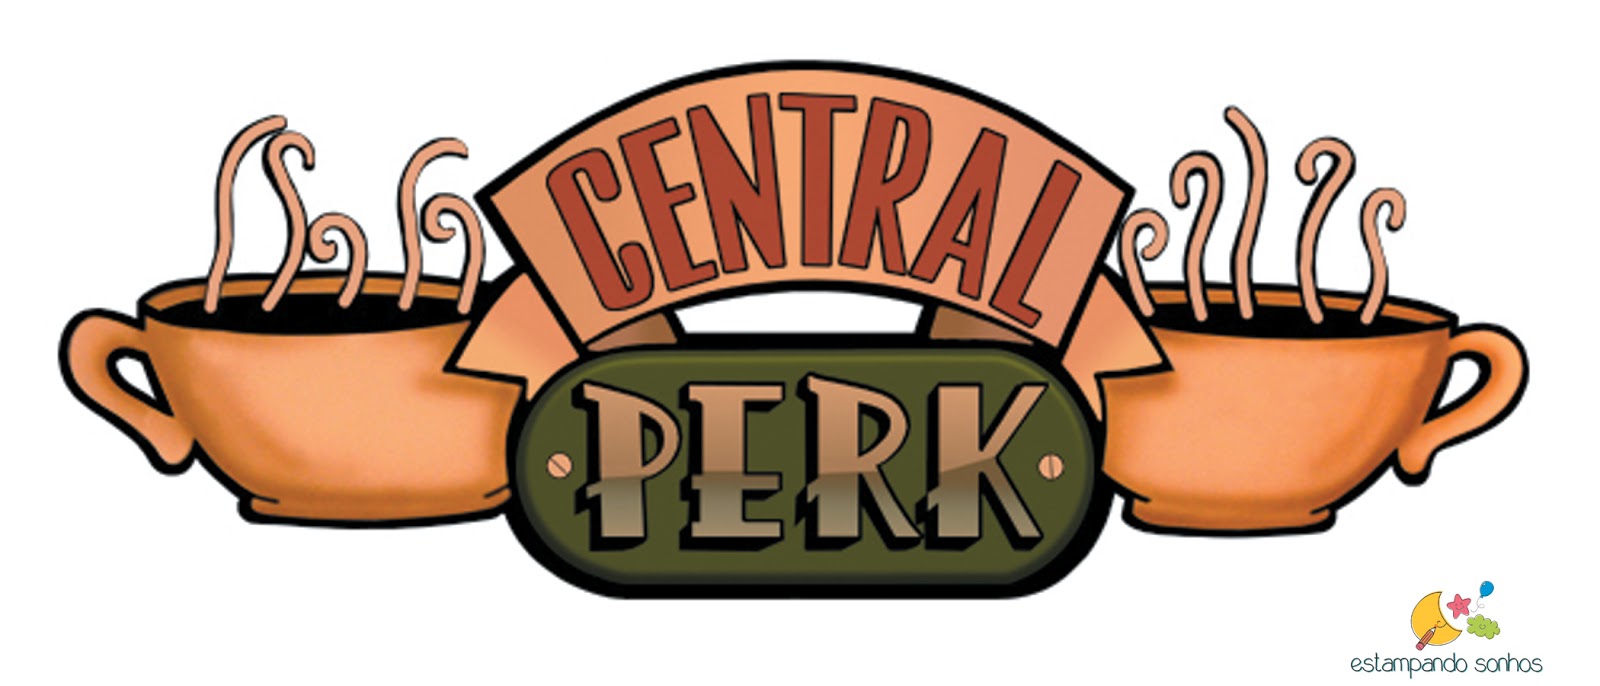 central perk logo vector at vectorified collection